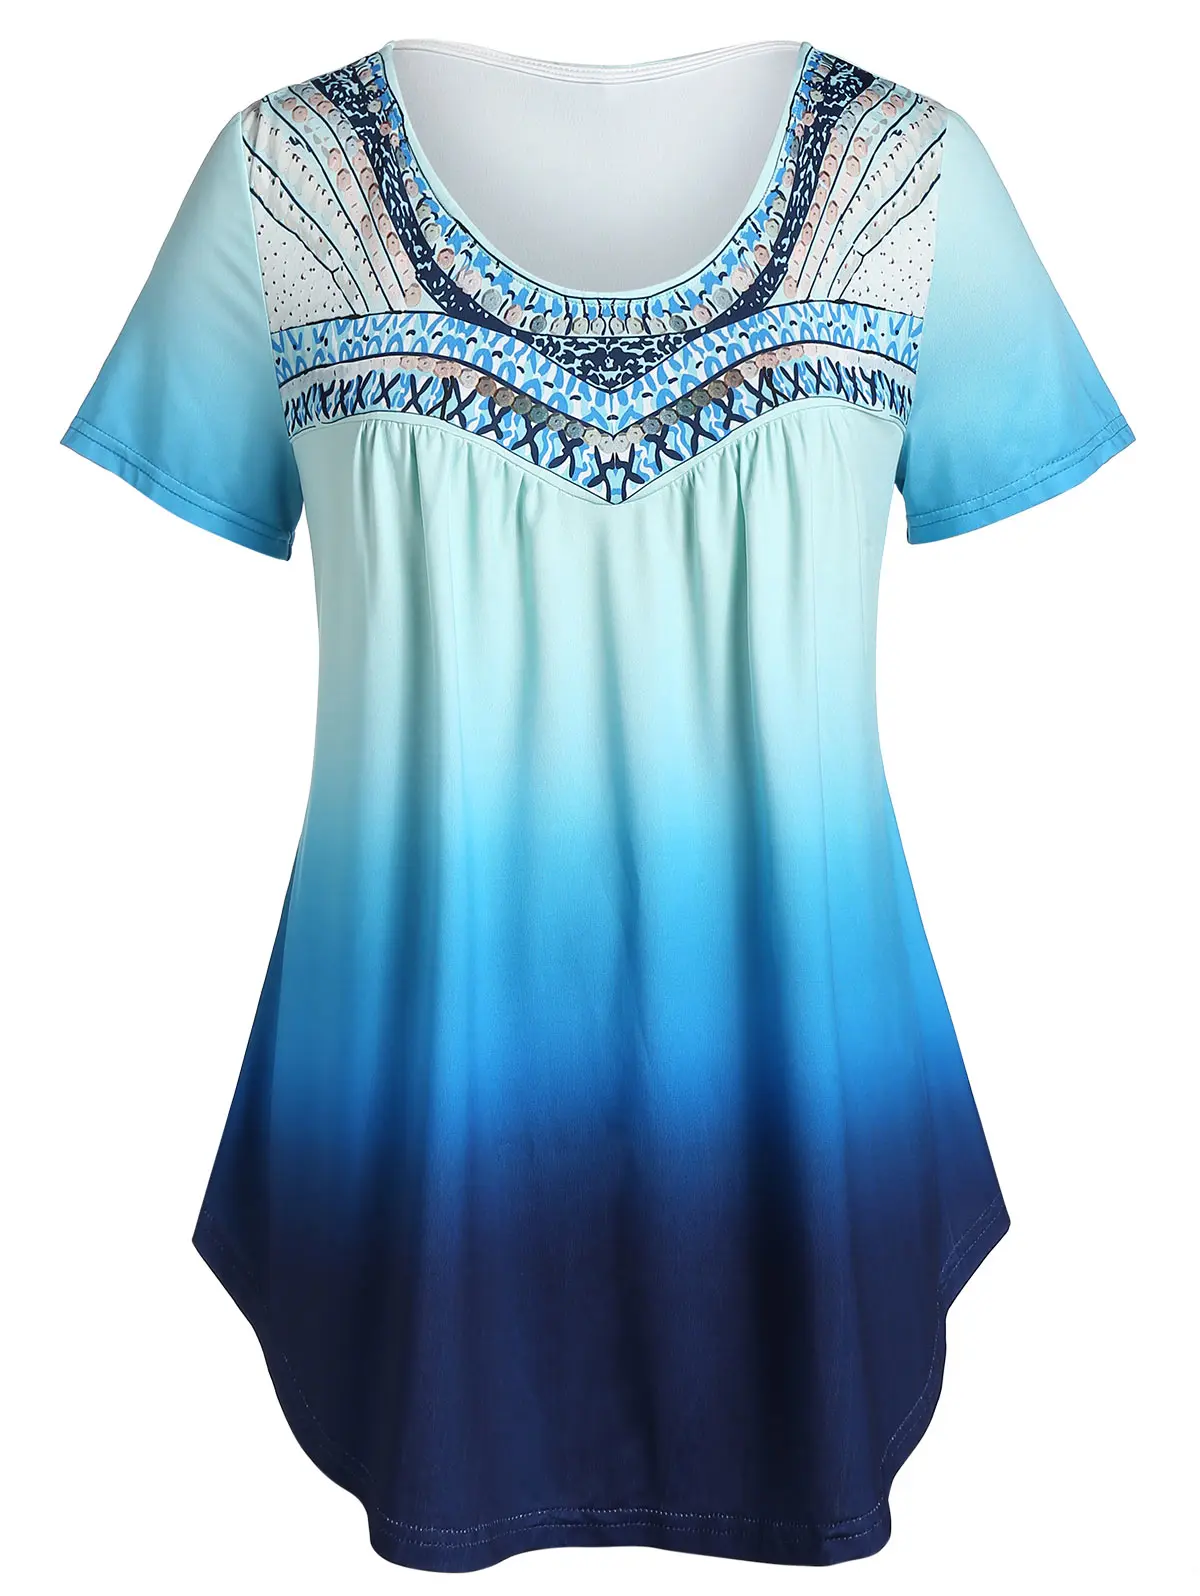 Rosegal 5XL большие размеры модные женские футболки летние с эффектом омбре принтом